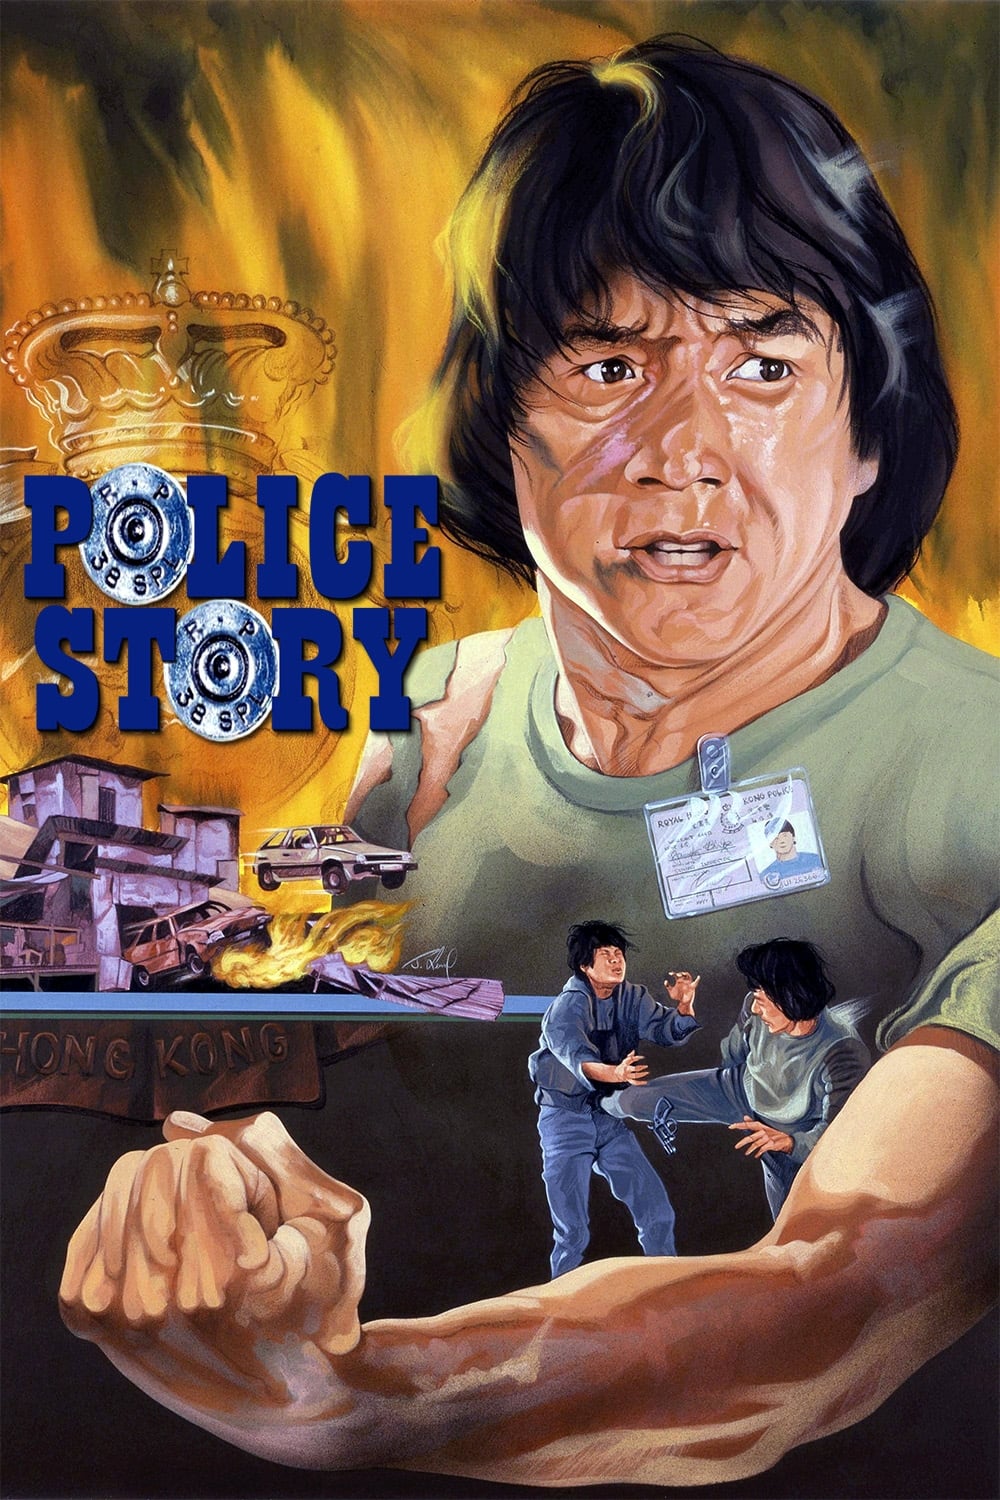 Plakát pro film “Police Story”